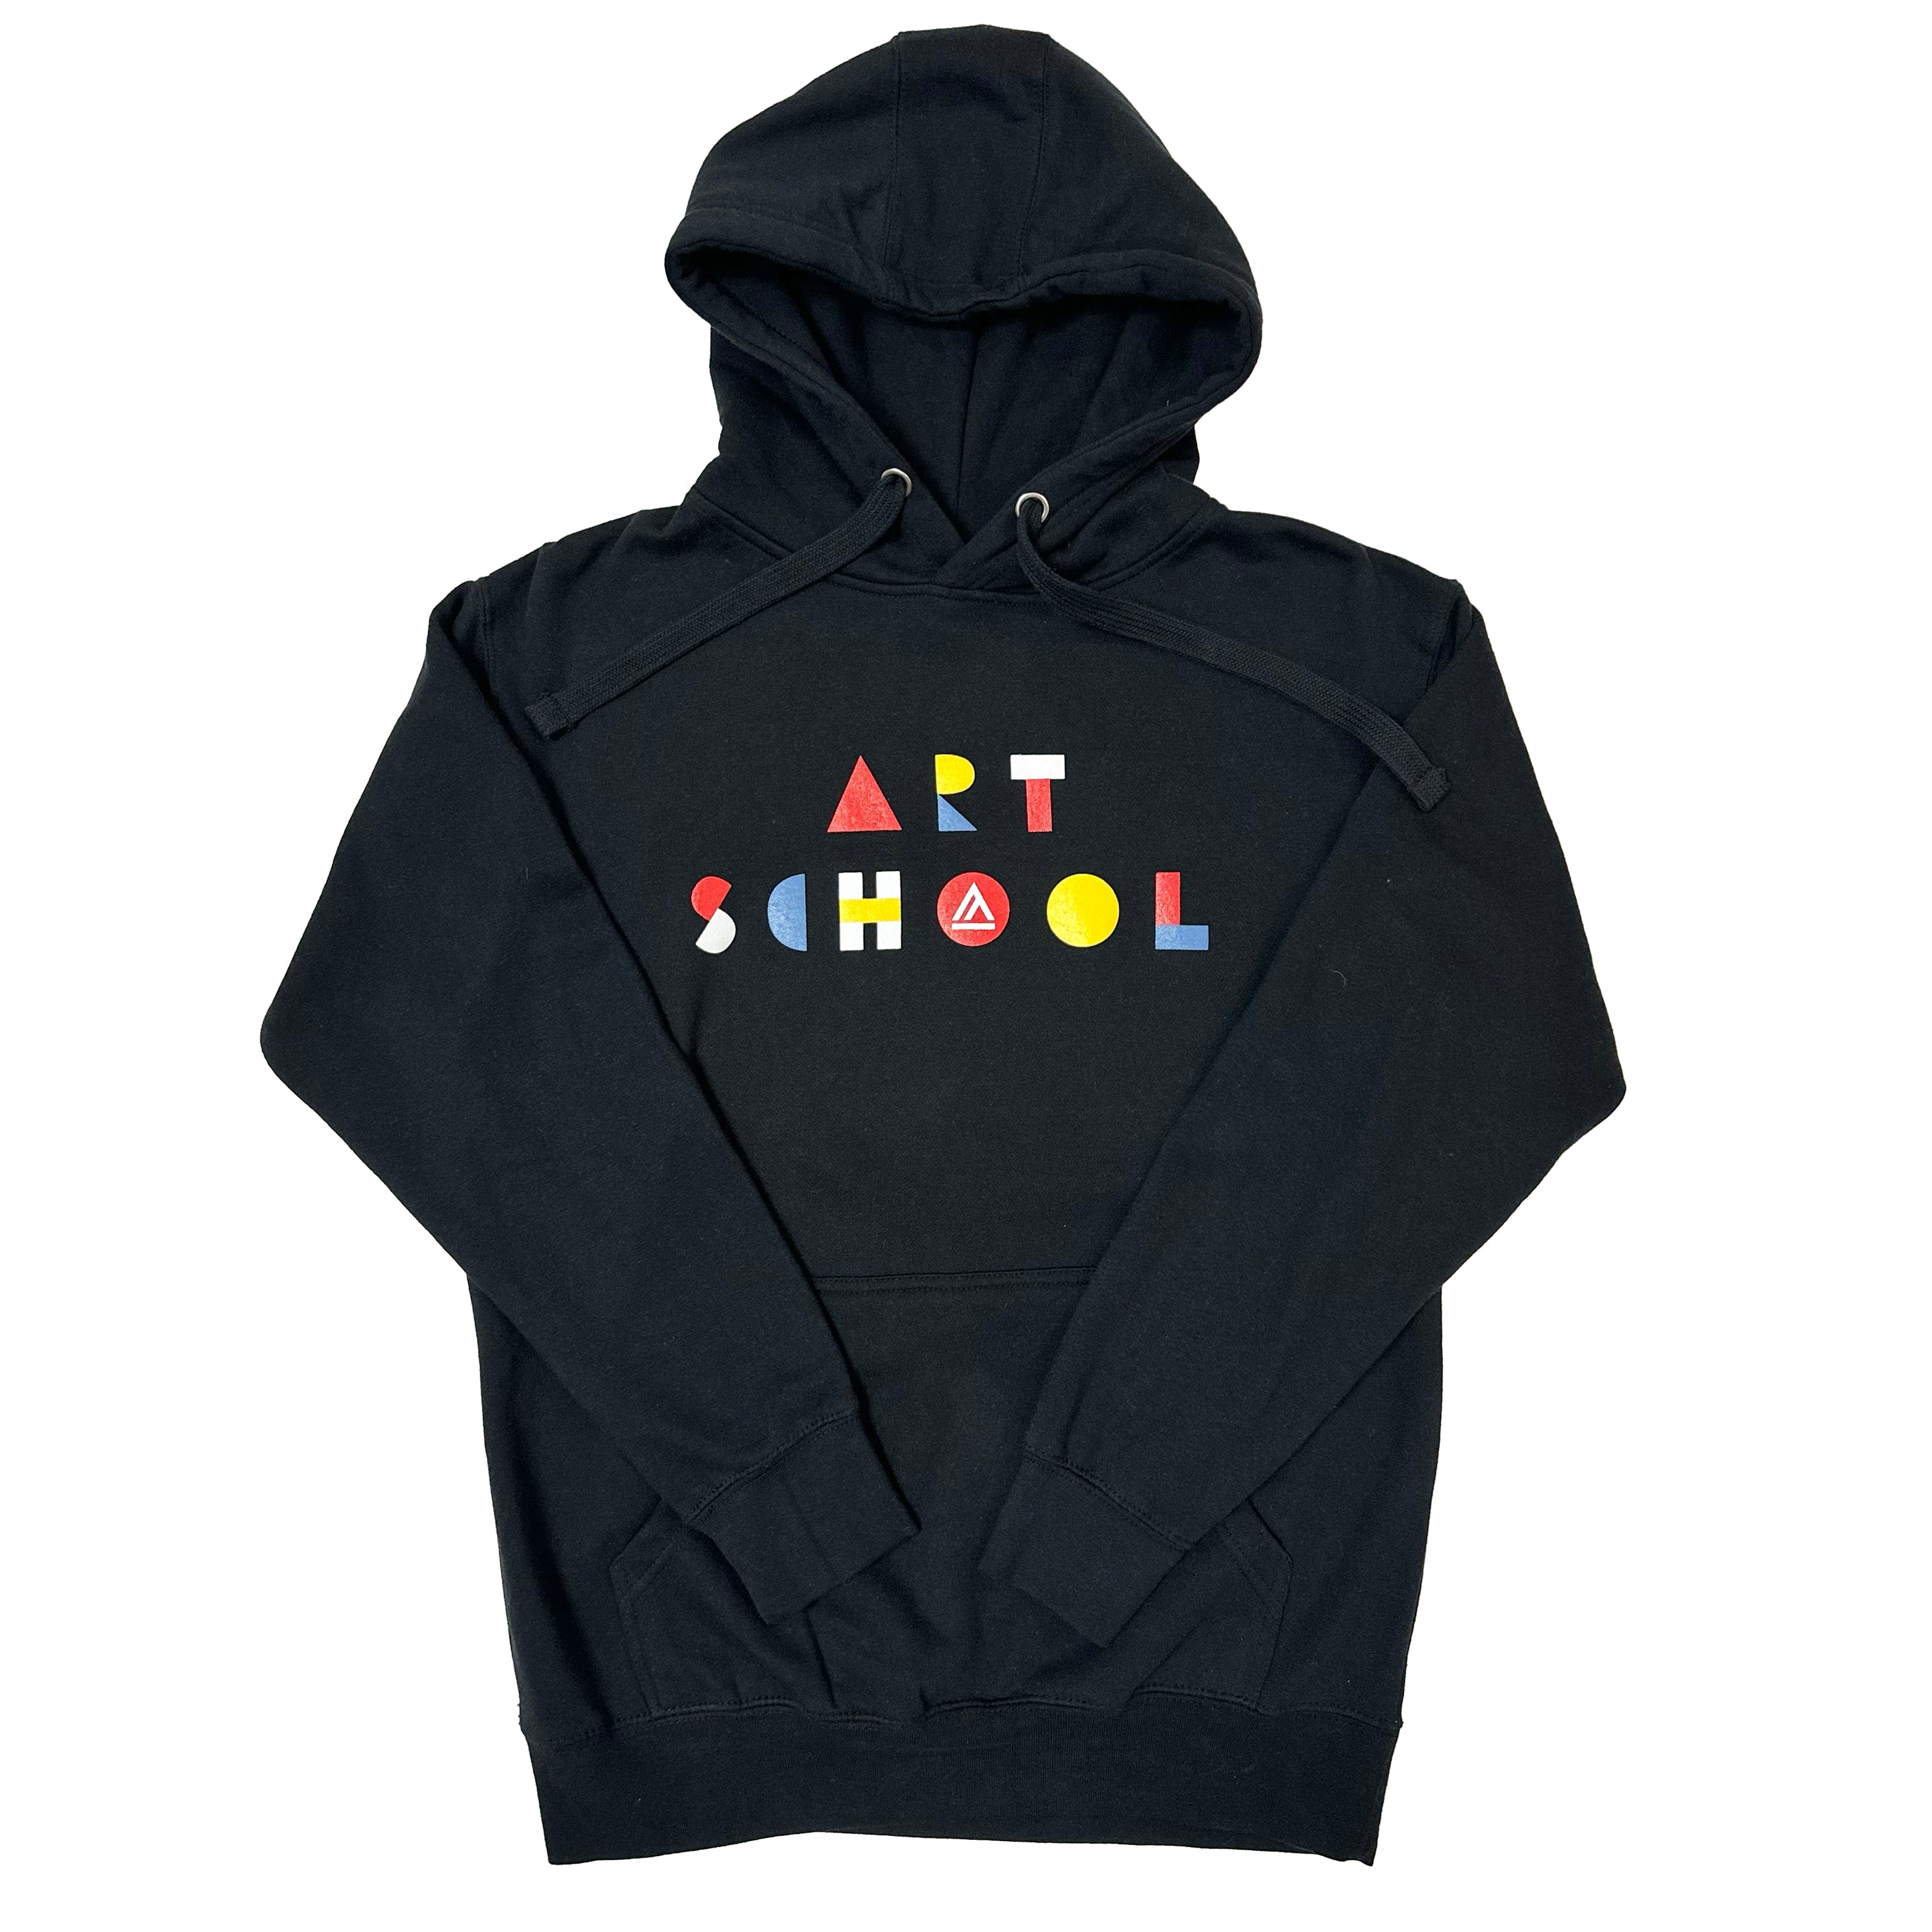 Hoodie "Art School"